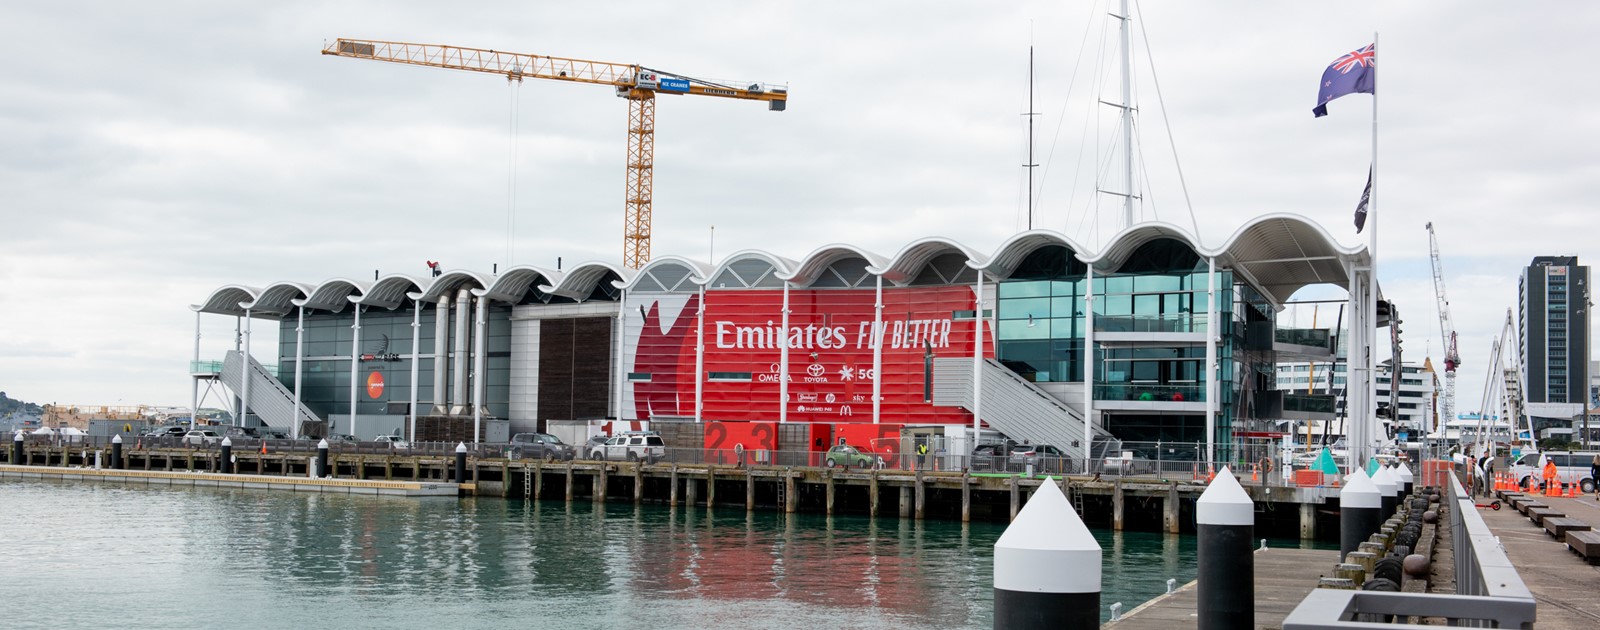 Emirates Team New Zealand base